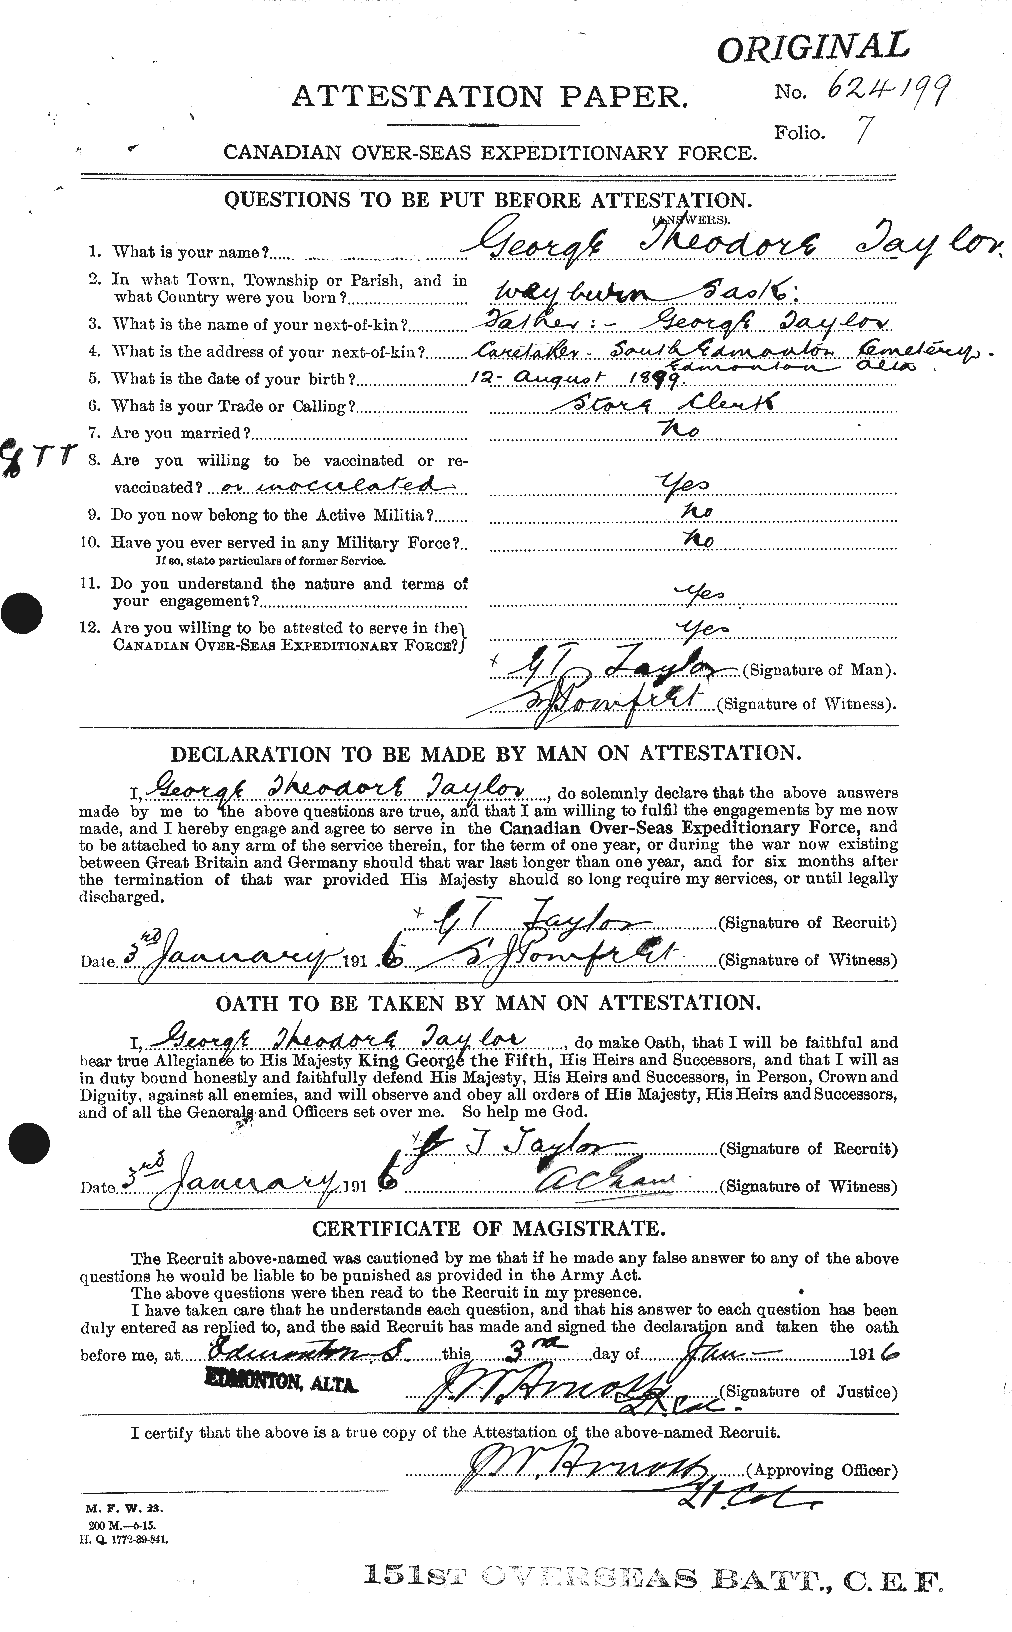 Dossiers du Personnel de la Première Guerre mondiale - CEC 626355a